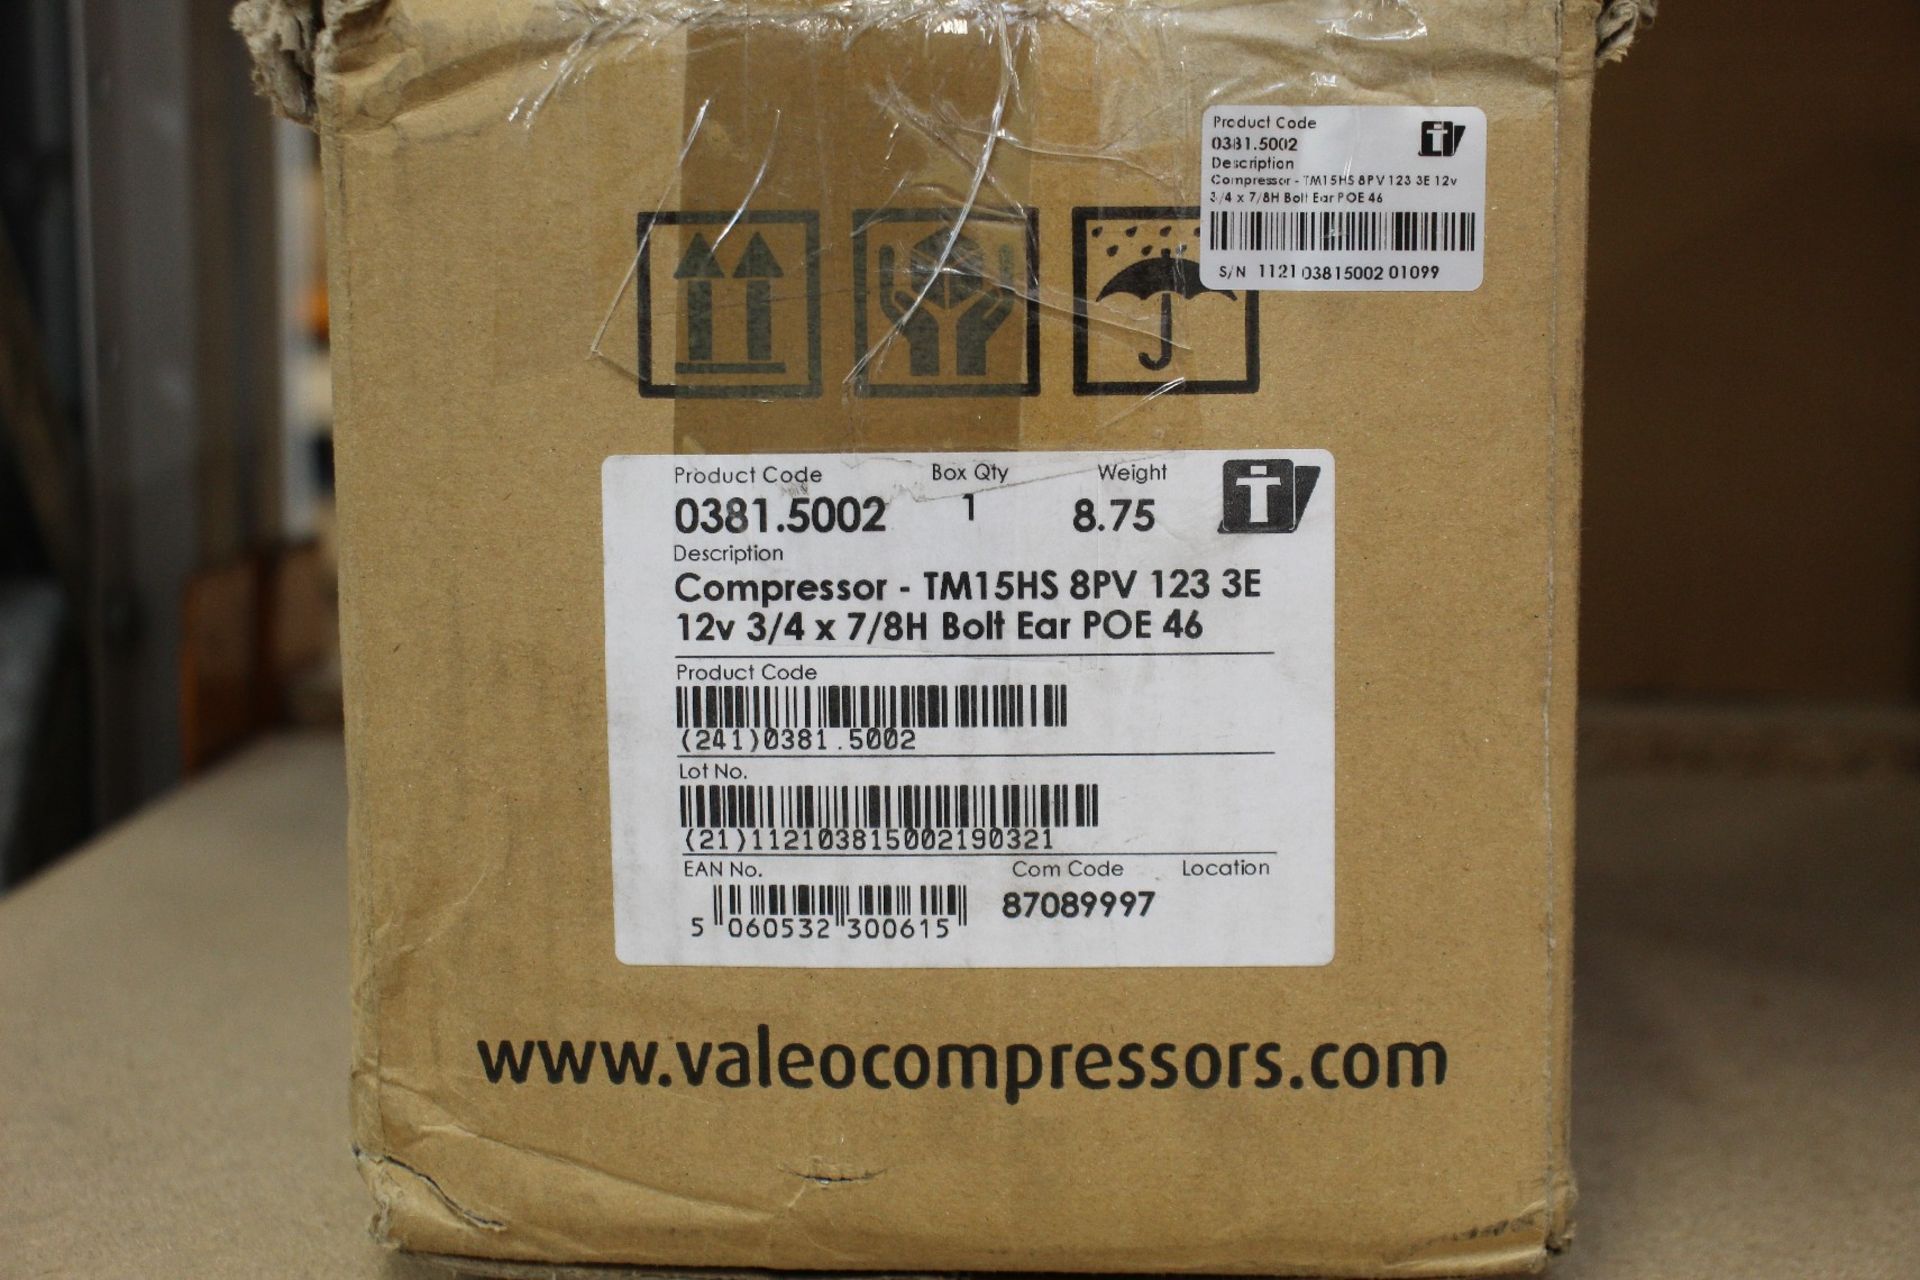 A Valeo refrigeration compressor (TM15HS 8PV 123 3E 12V 3/4 X 7/8 BOLT EAR POE 46).